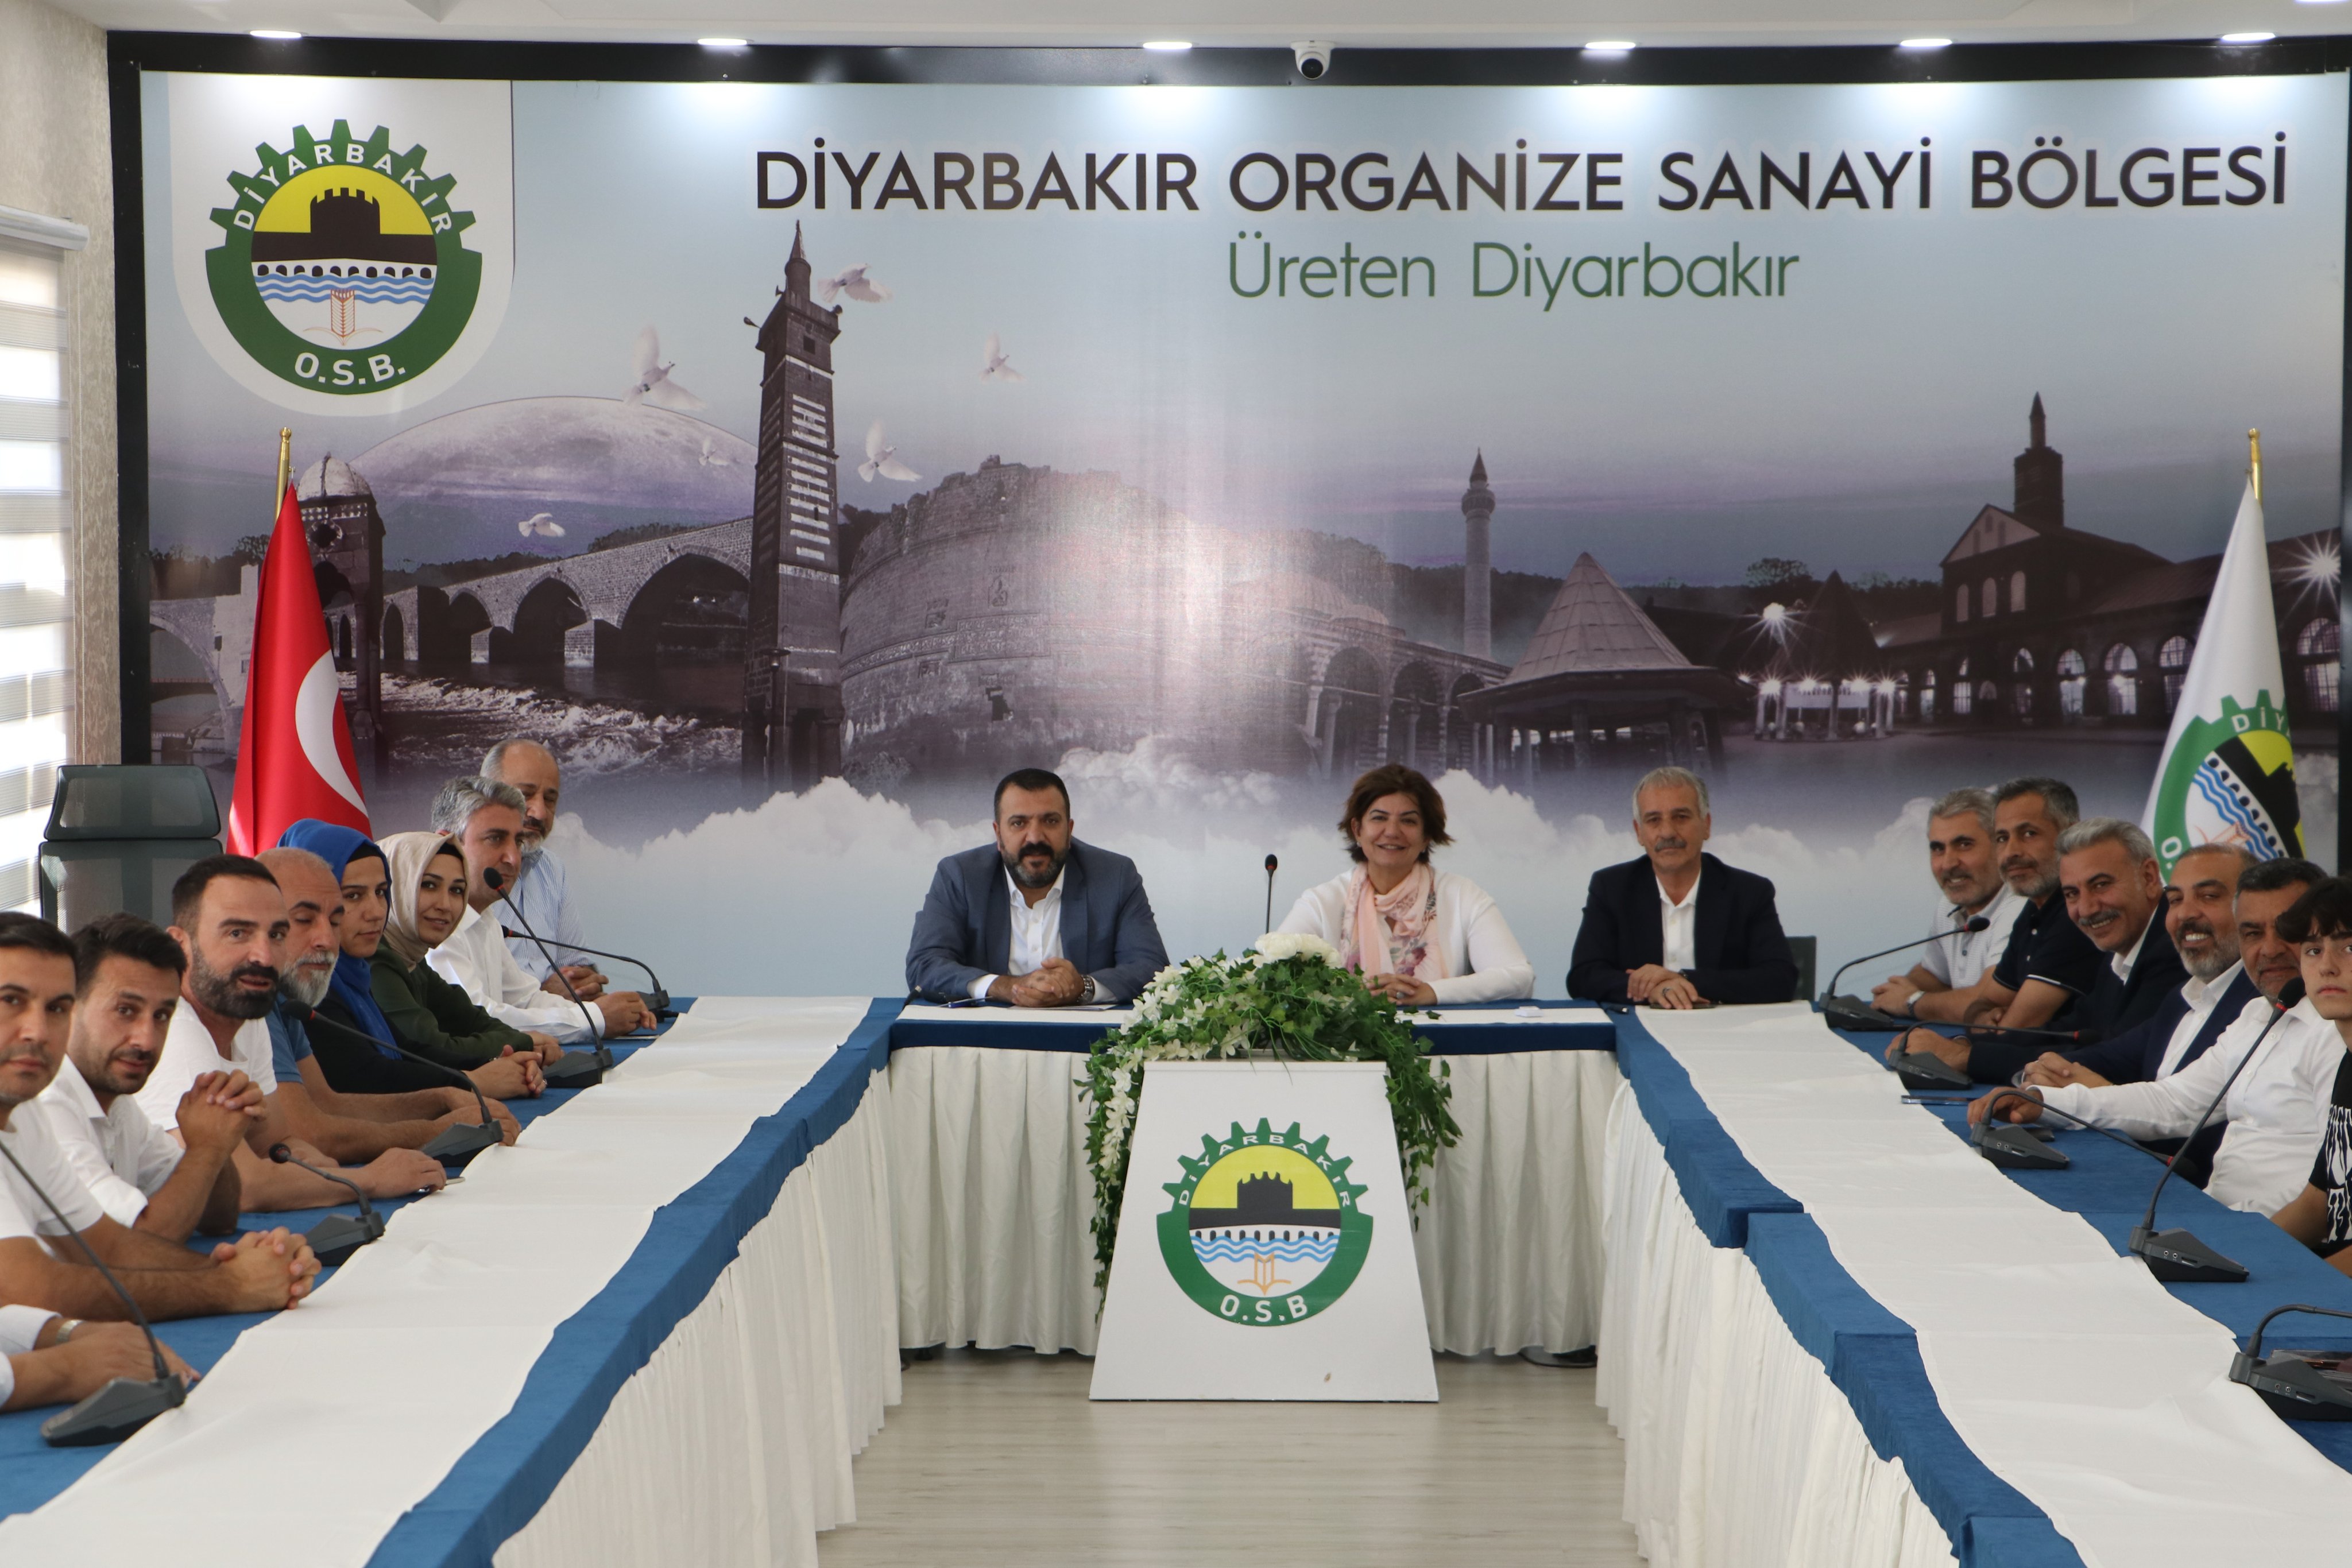 AK Parti Diyarbakır Milletvekili Suna Kepolu Ataman ve beraberindeki kalabalık bir gurup, Diyarbakır Organize Sanayi Bölgesi Yönetim'ini ziyaret etti